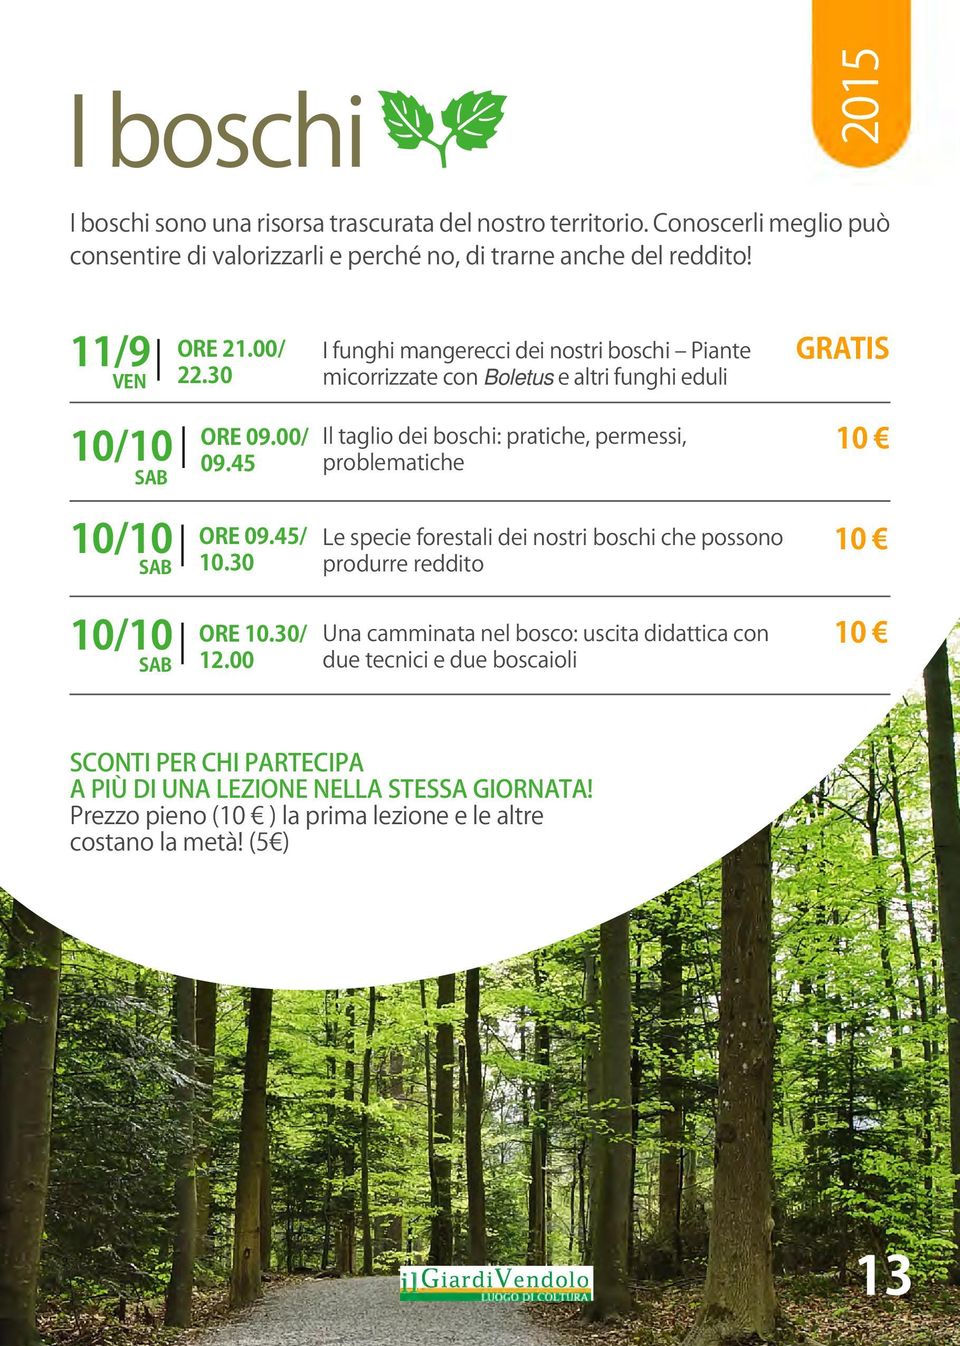 45 Il taglio dei boschi: pratiche, permessi, problematiche 10/10 ORE 09.45/ SAB 10.30 Le specie forestali dei nostri boschi che possono produrre reddito 10/10 ORE 10.